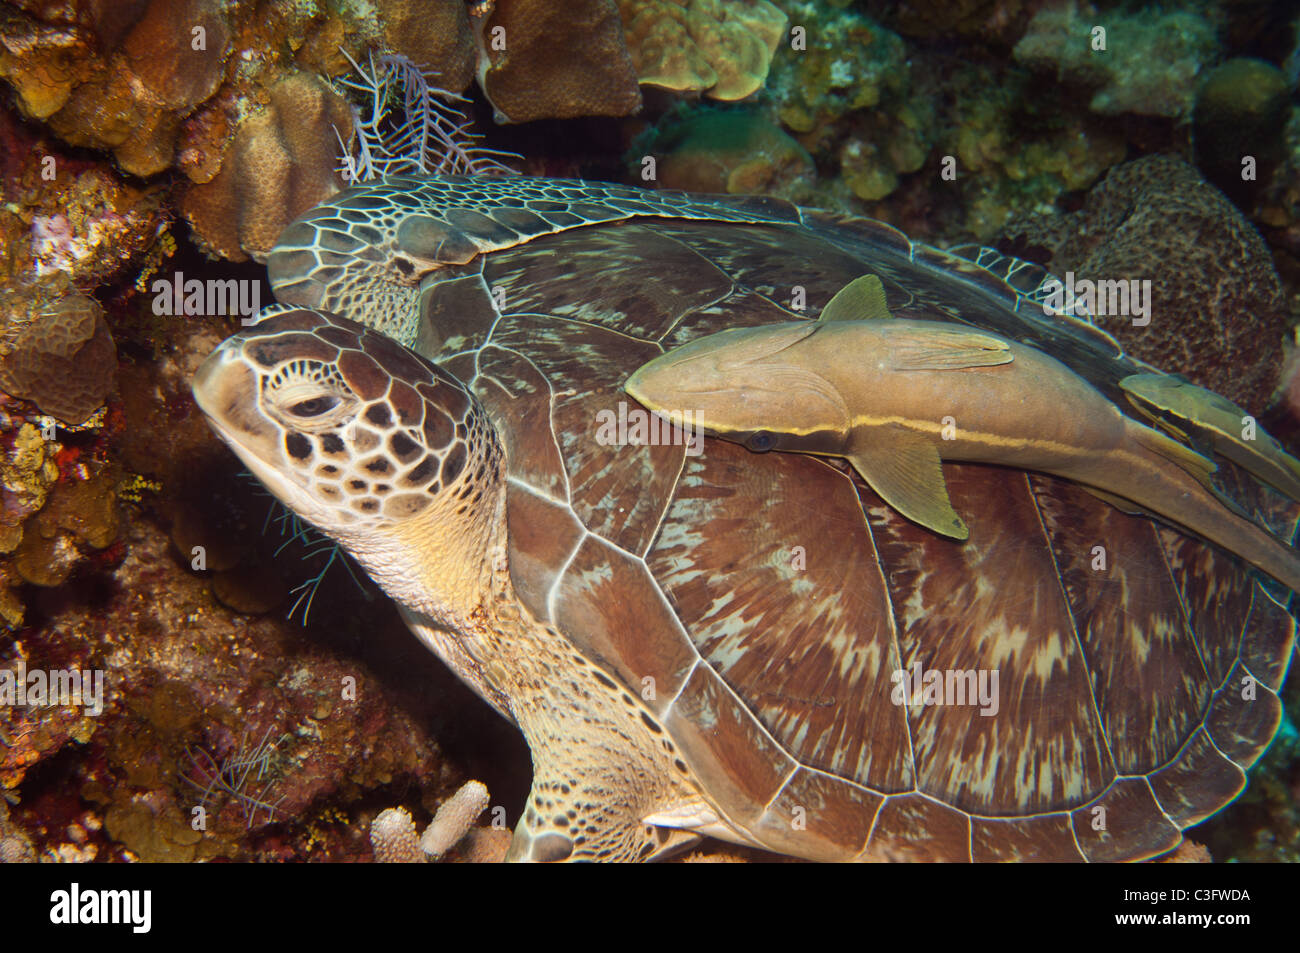 White suckerfish possono spesso essere trovati autostop sul retro dei grandi organismi marini come questa tartaruga verde. Foto Stock